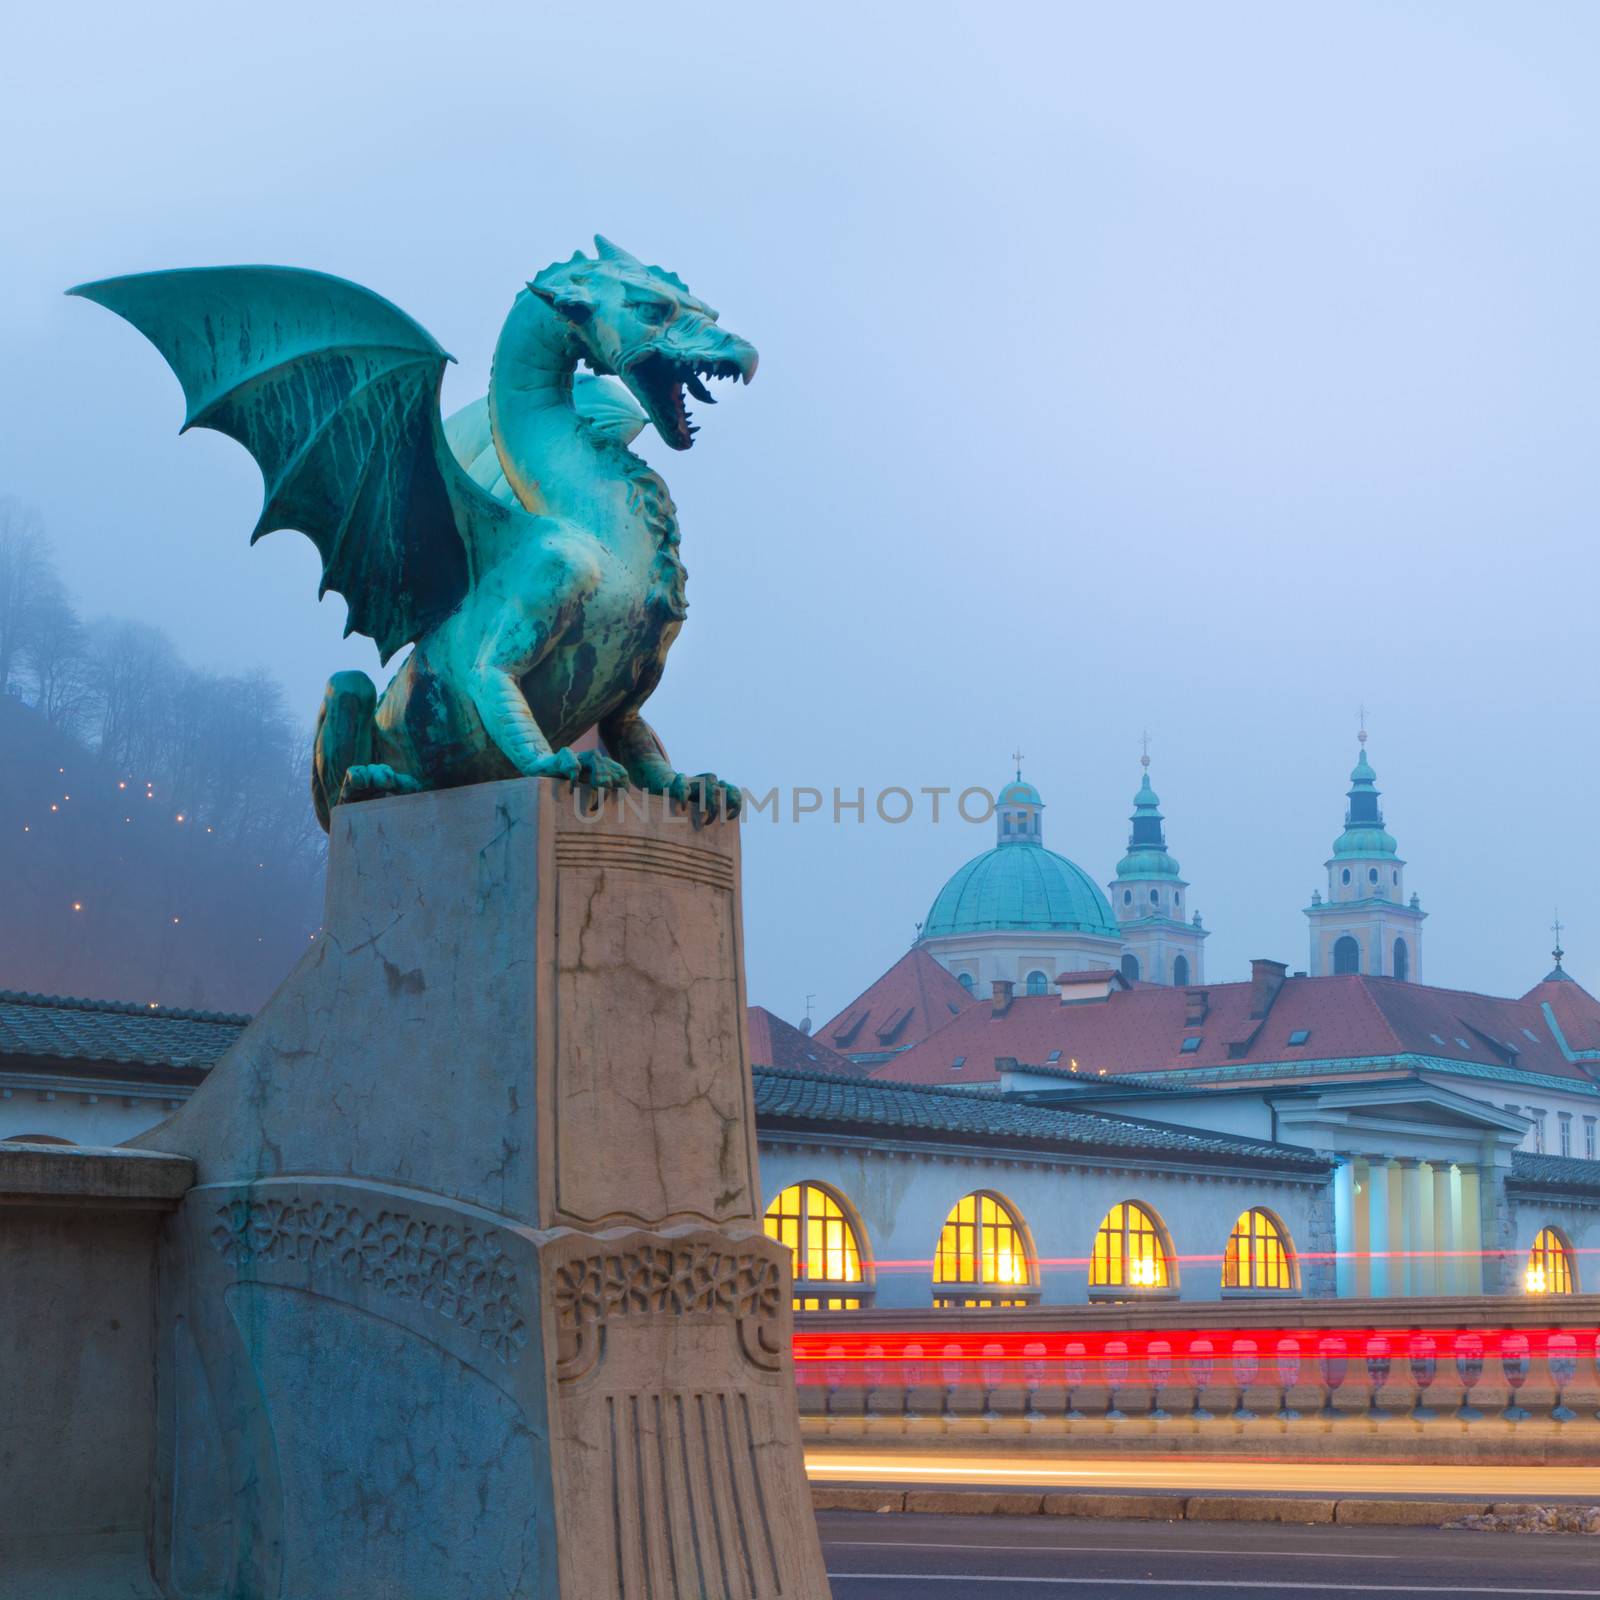 Dragon bridge (Zmajski most), Ljubljana, Slovenia. by kasto